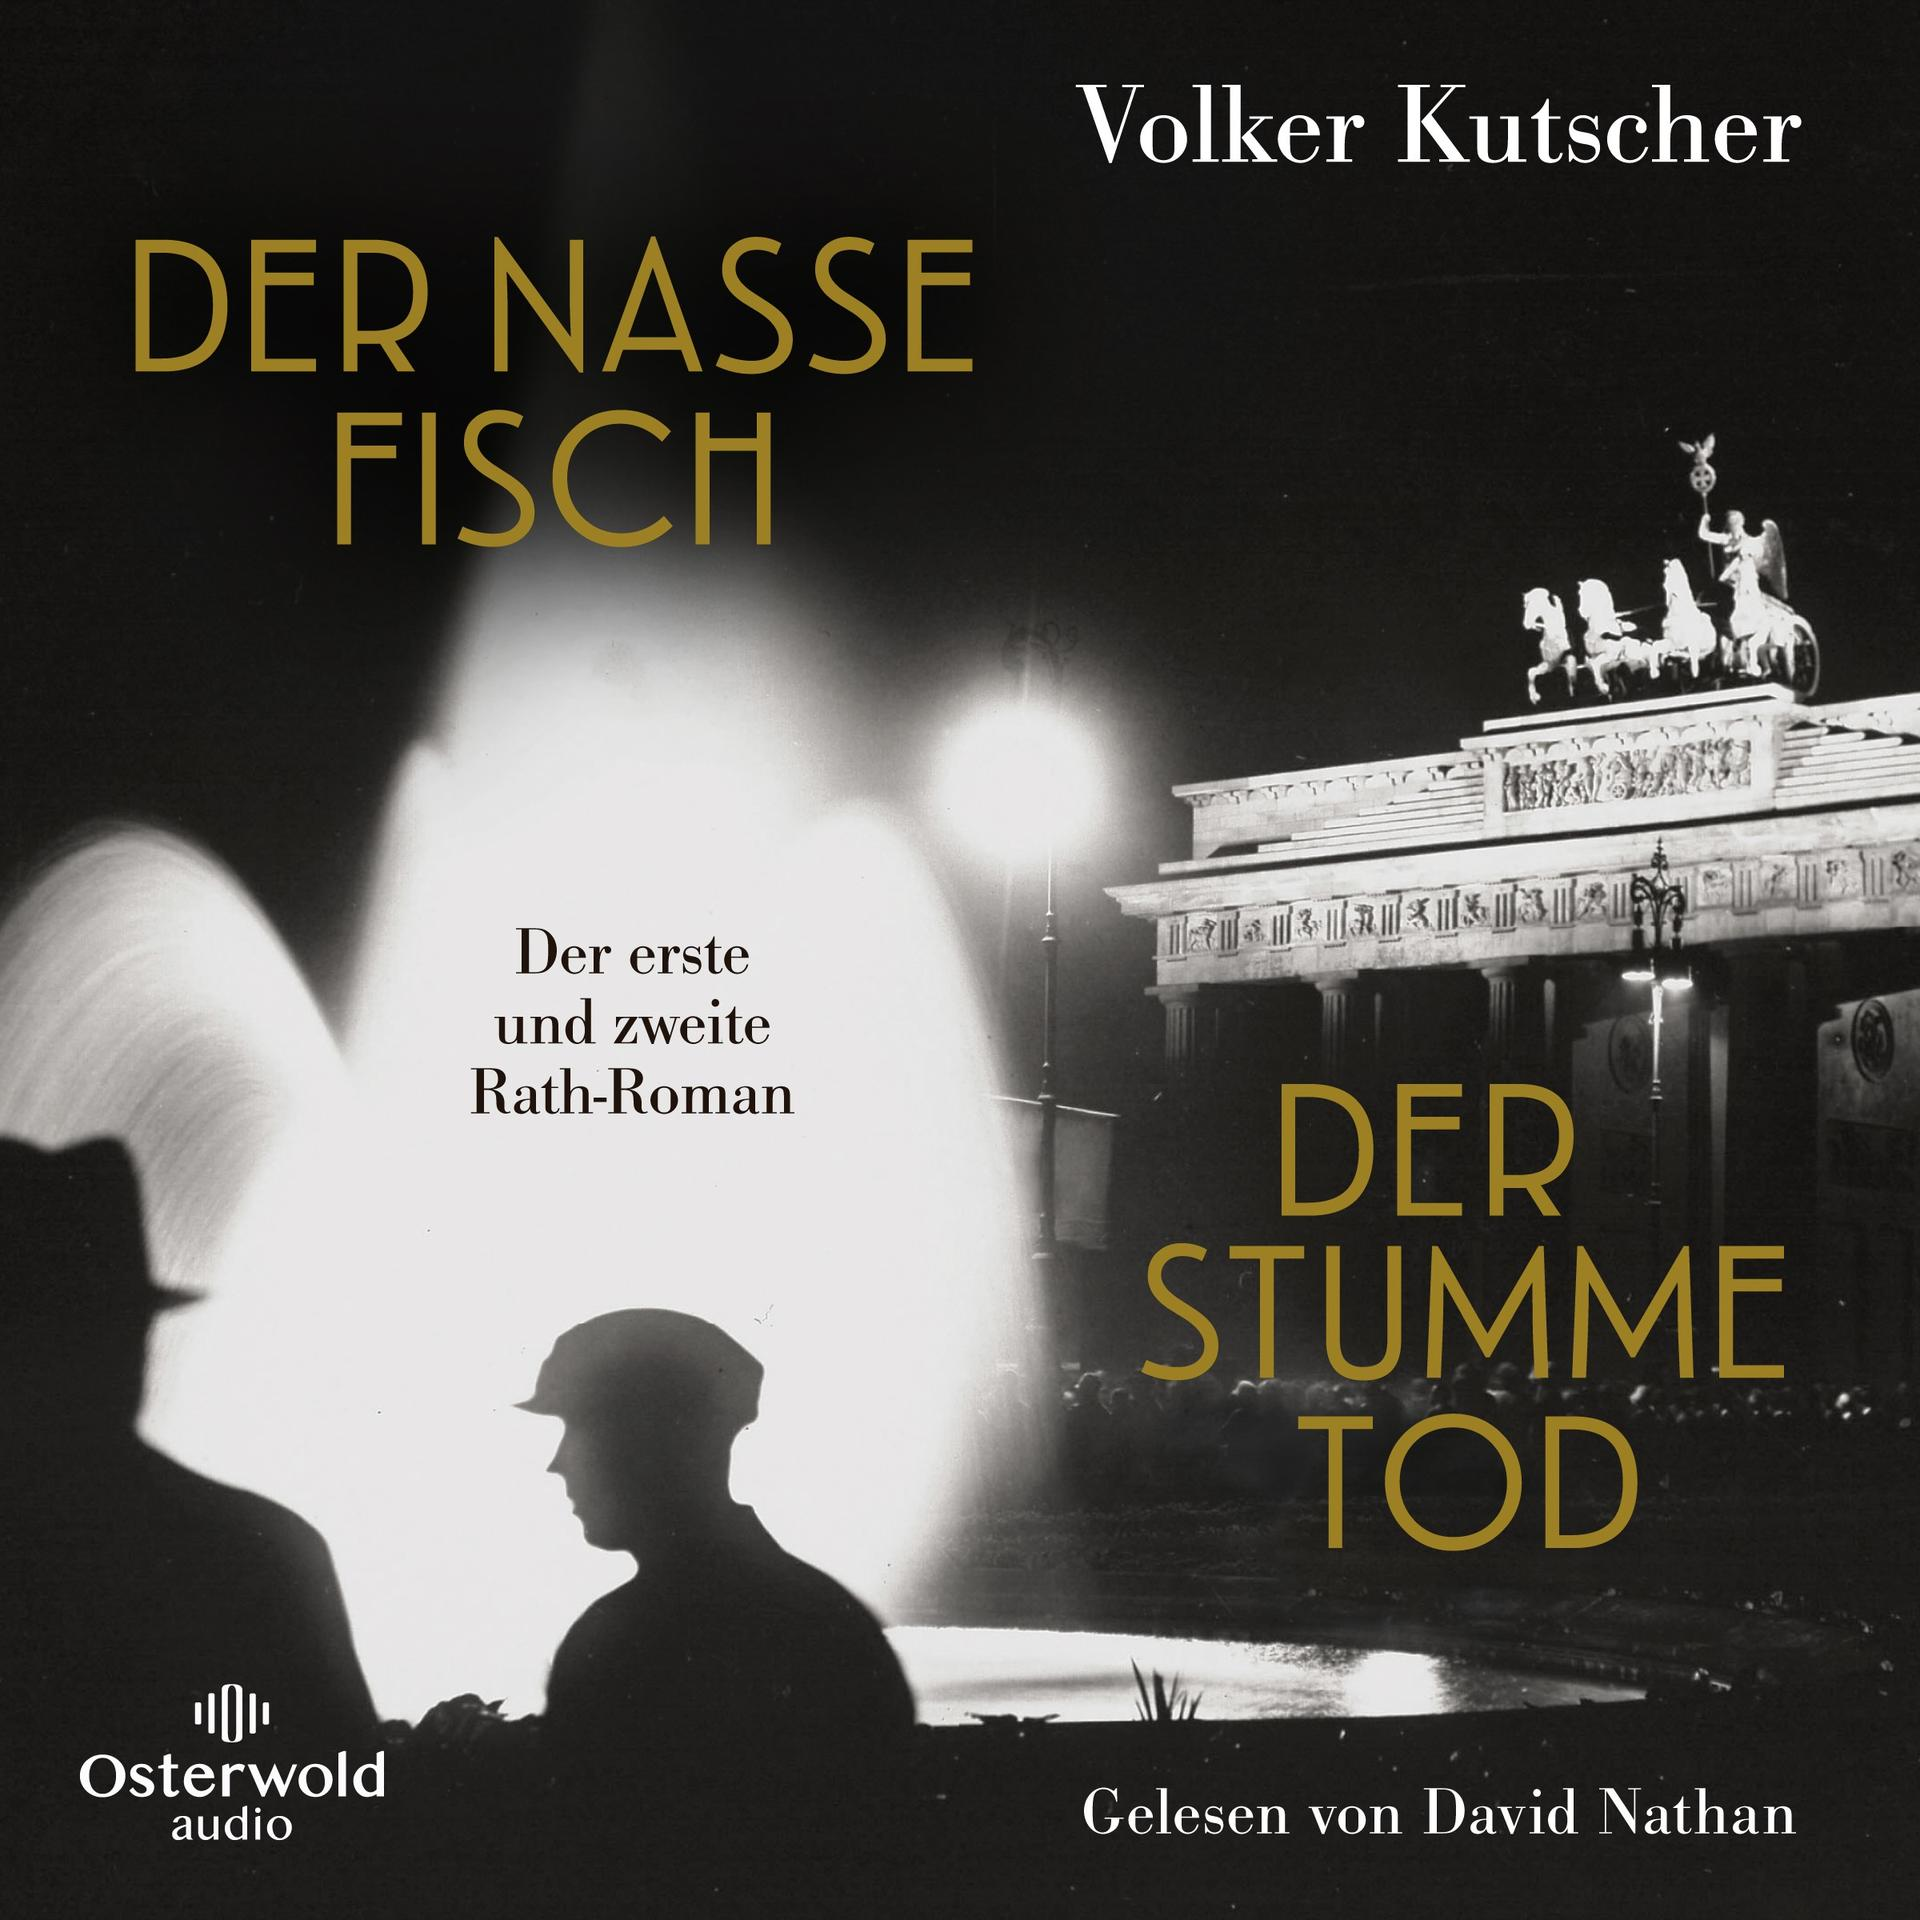 Fisch (MP3-CD) Tod / stumme Der nasse - Der